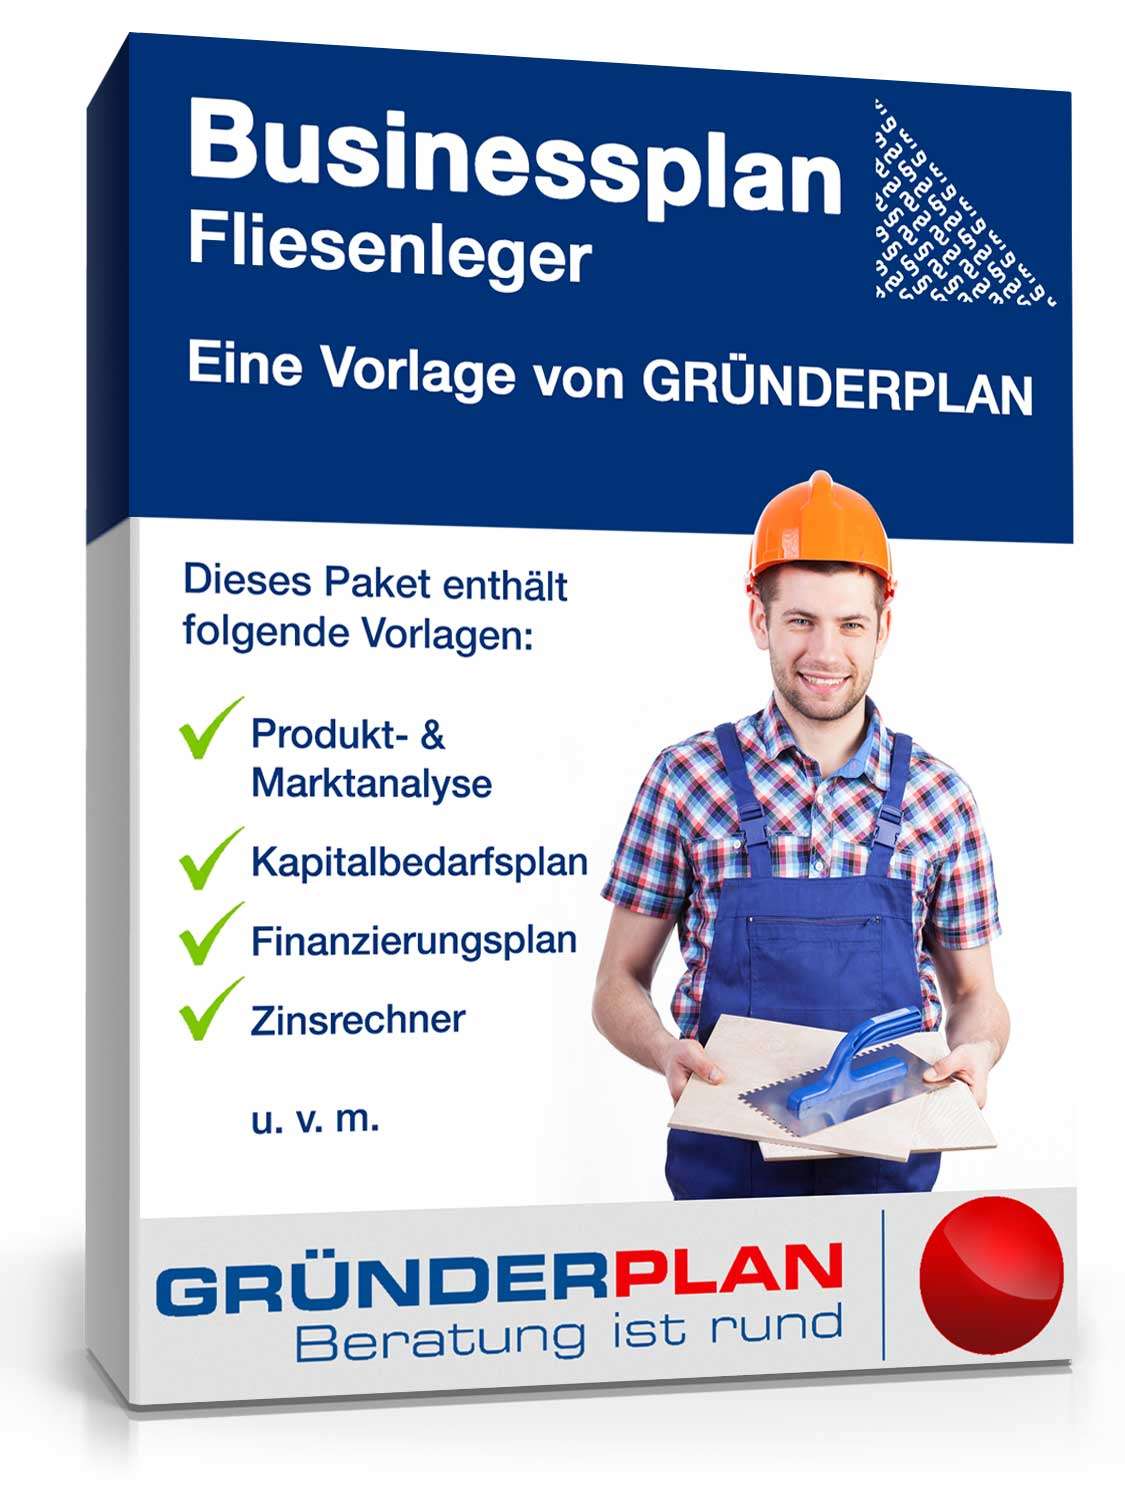 Hauptbild des Produkts: Businessplan Fliesenleger von Gründerplan